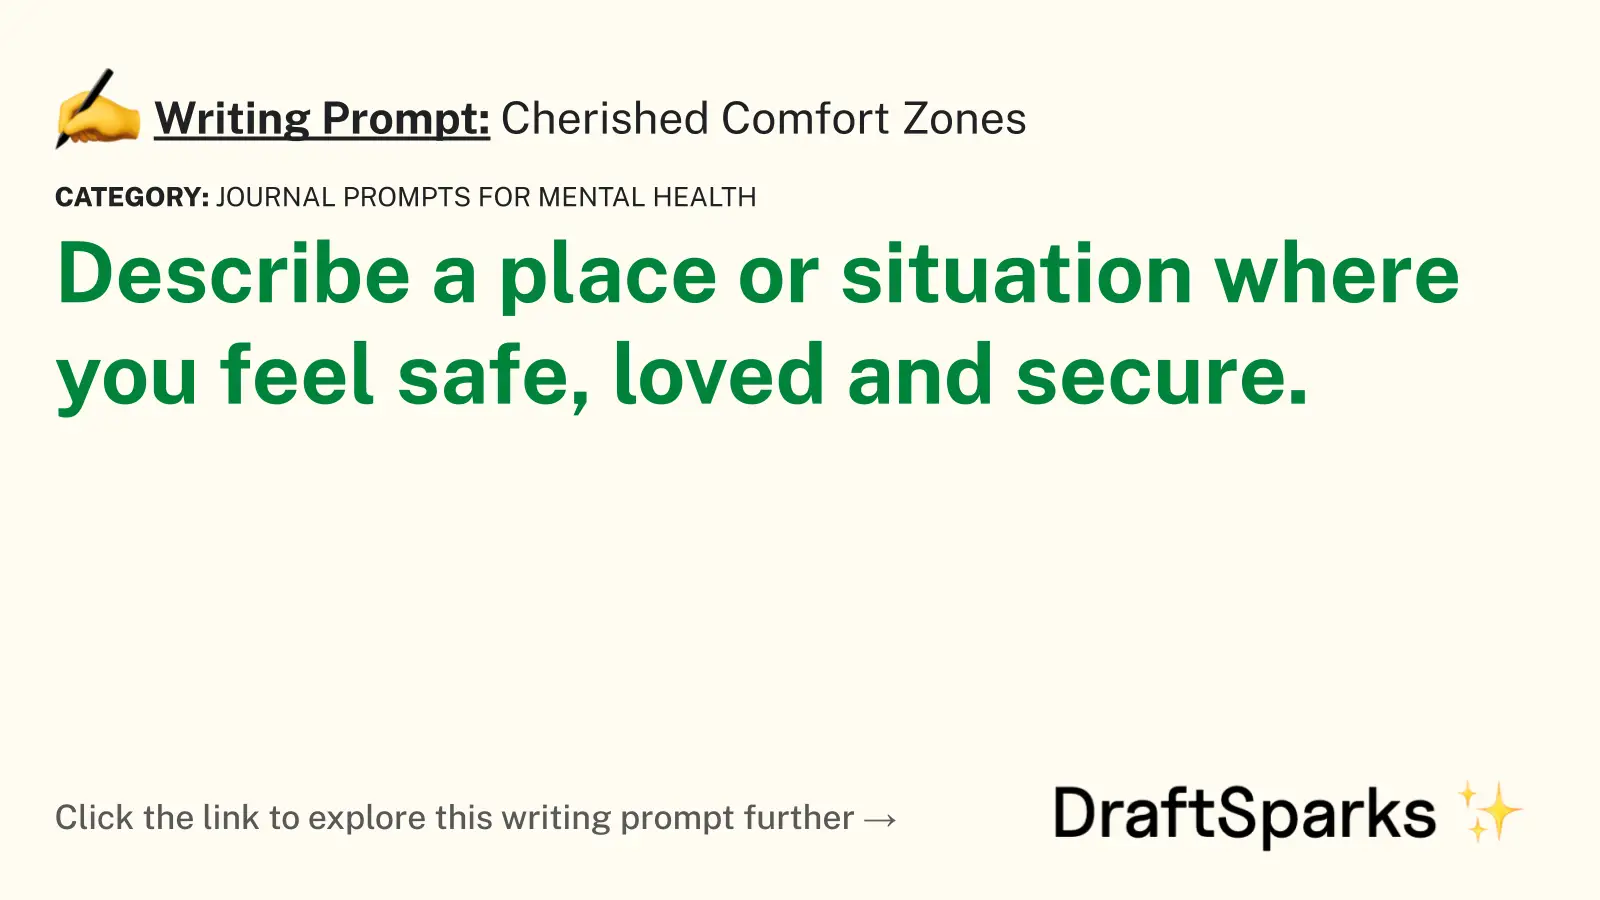 Cherished Comfort Zones